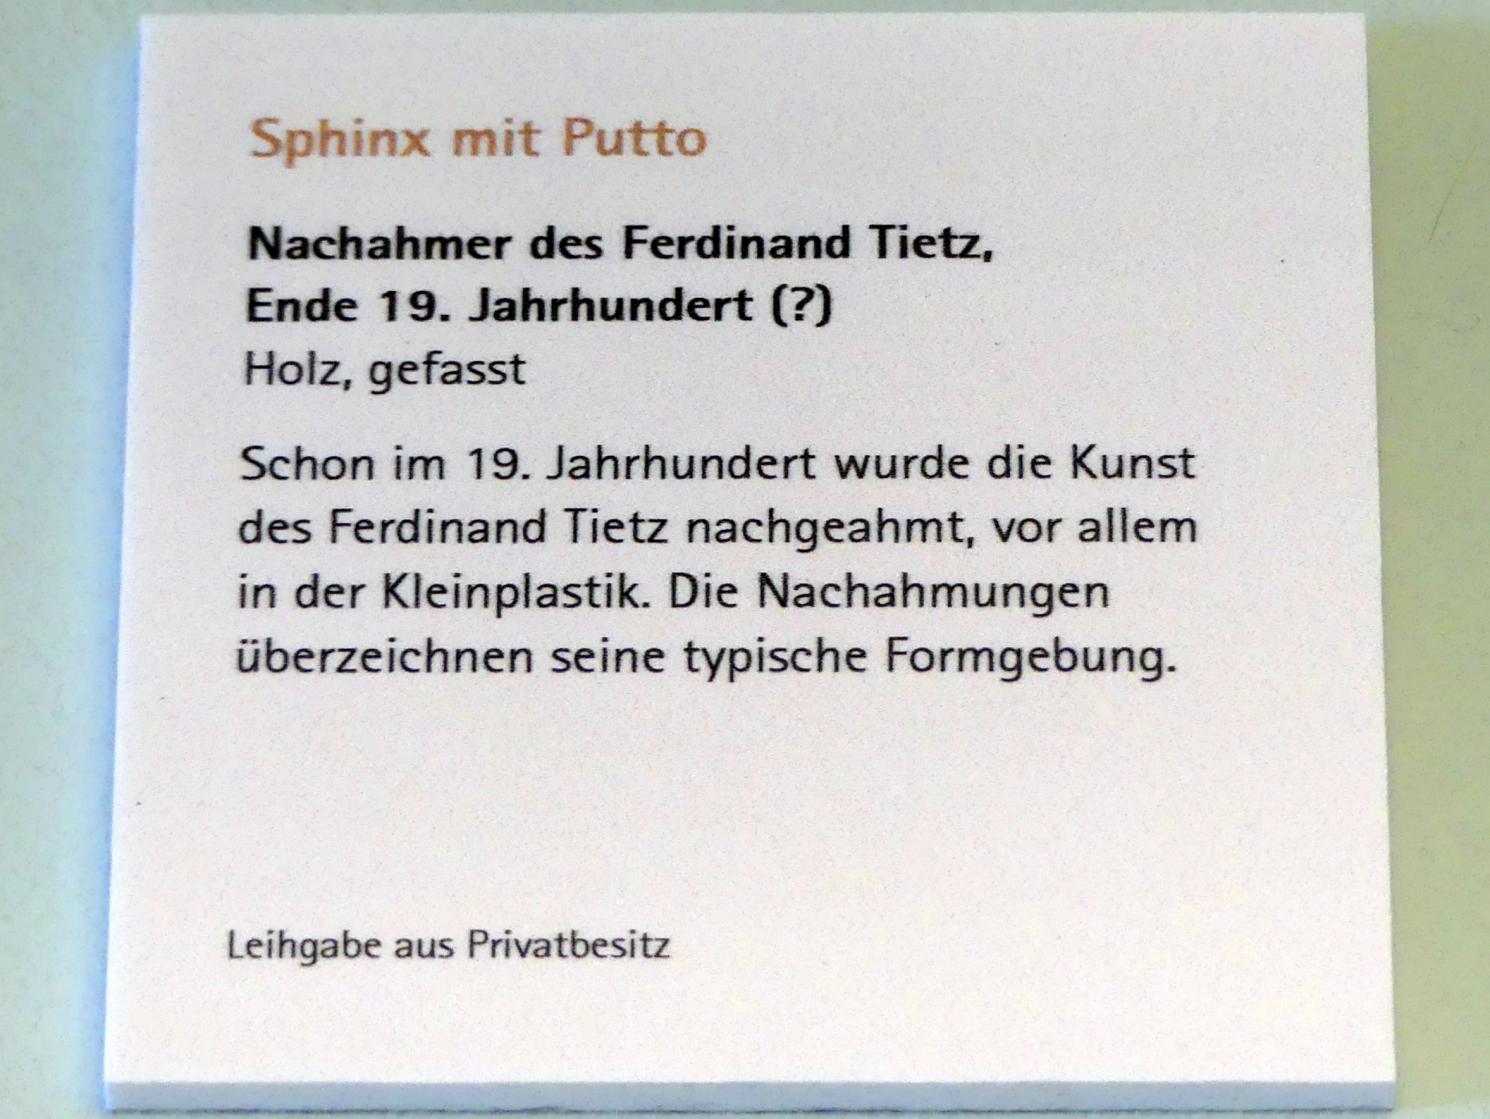 Sphinx mit Putto, Würzburg, Museum für Franken (ehem. Mainfränkisches Museum), Bozzetti-Sammlung, Ende 19. Jhd., Bild 2/2